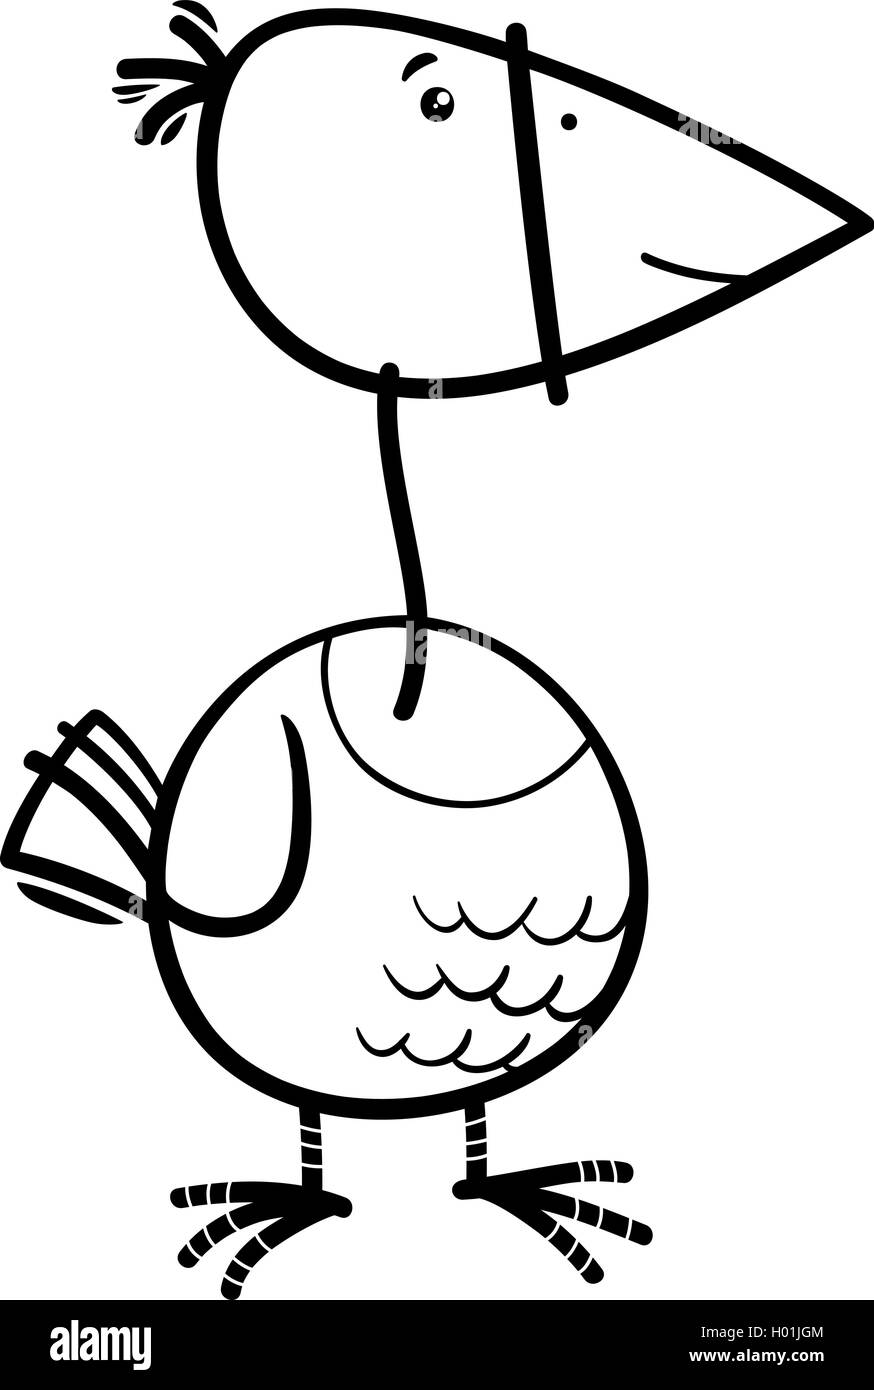 Illustration Cartoon noir et blanc d'oiseaux drôle personnage animal Coloring Book Illustration de Vecteur